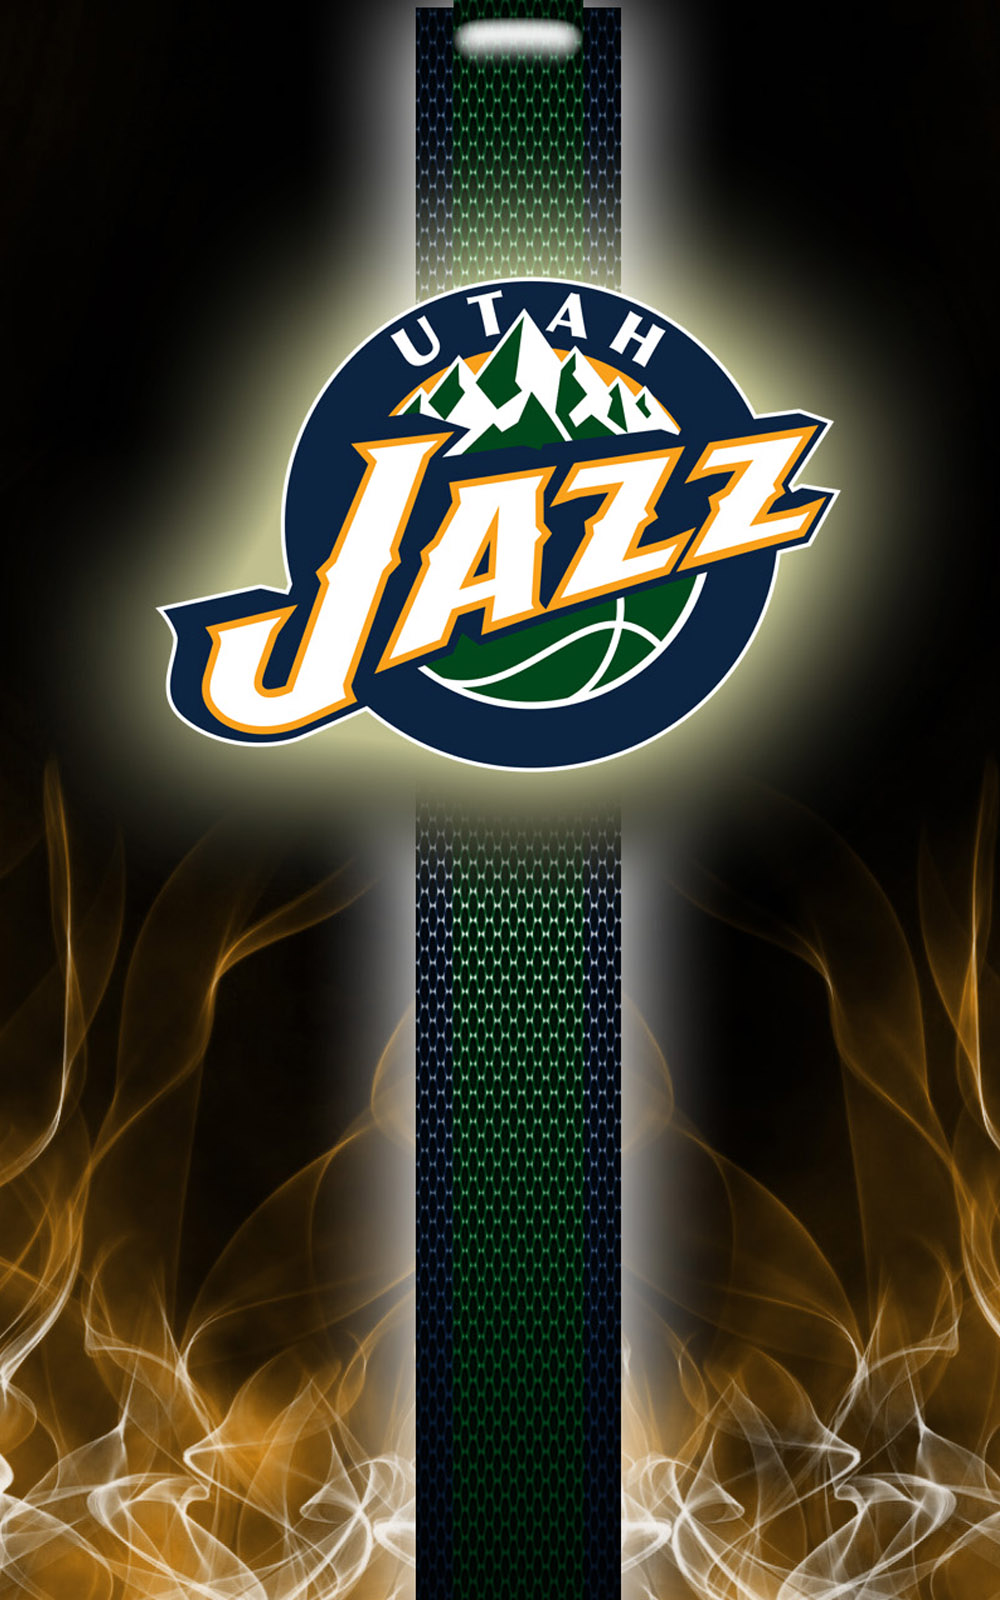 Utah Jazz Background